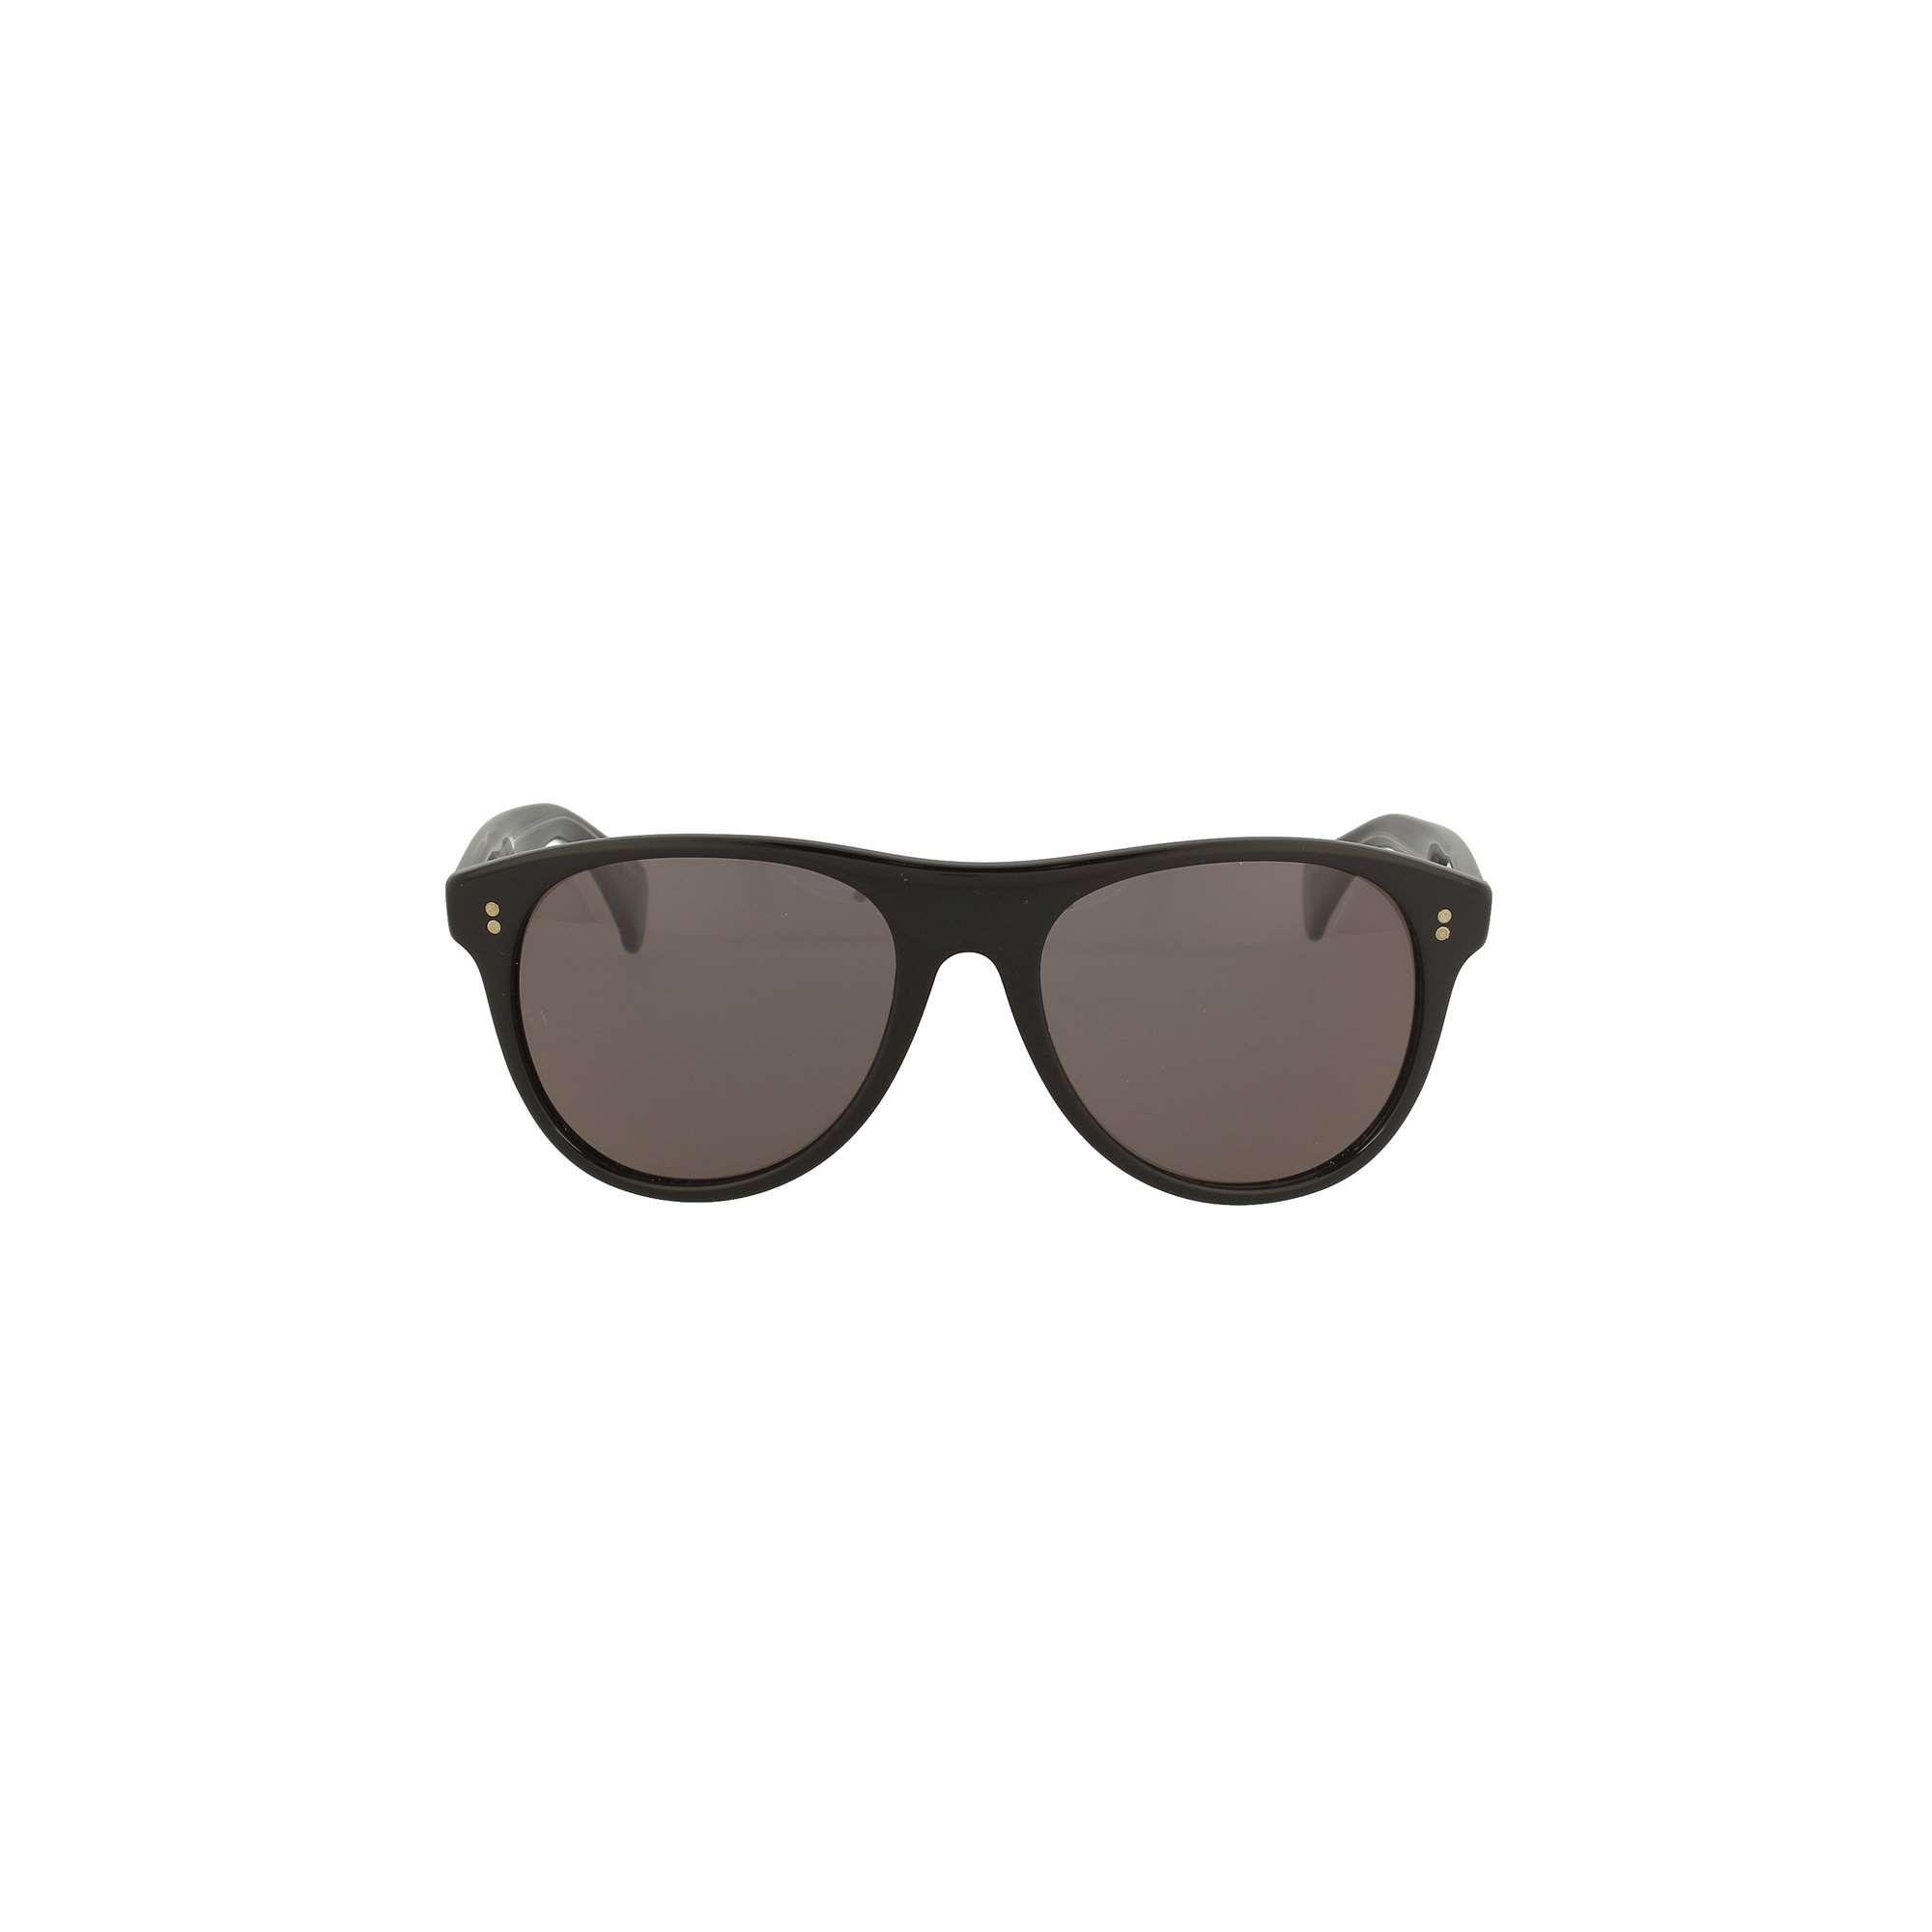 Giorgio Armani Metal Sunglasses in Black - Lyst